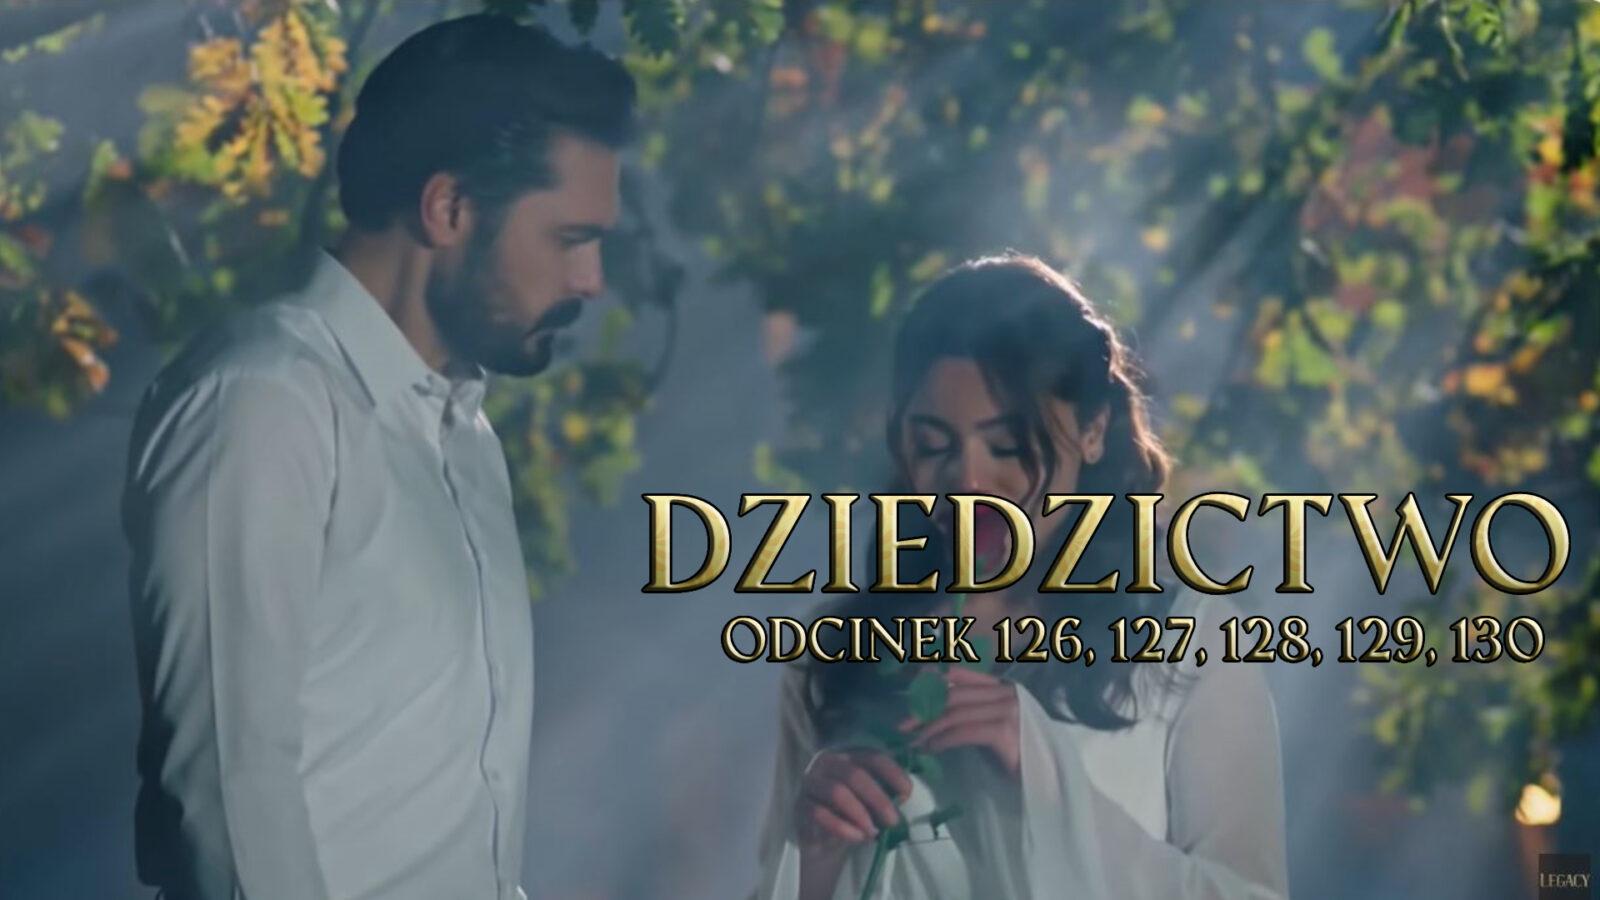 Dziedzictwo odcinki 126, 127, 128, 129, 130 online ZA DARMO – Oglądaj serial turecki DZIEDZICTWO na TVP VOD